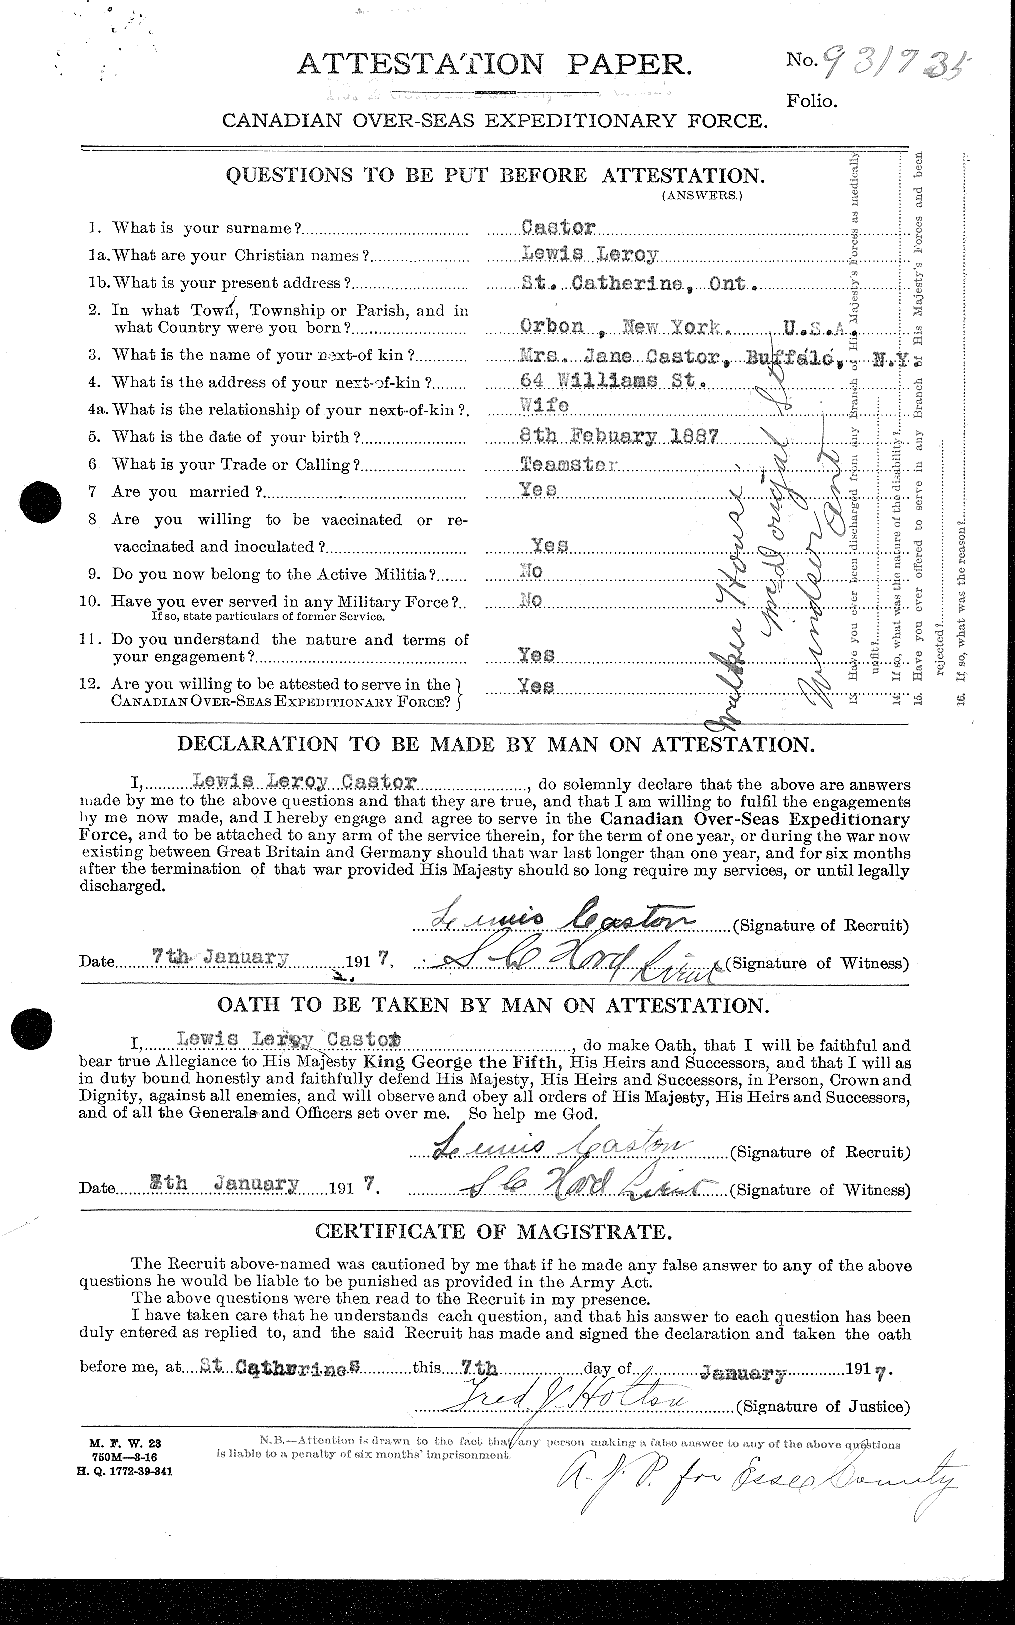 Dossiers du Personnel de la Première Guerre mondiale - CEC 007292a